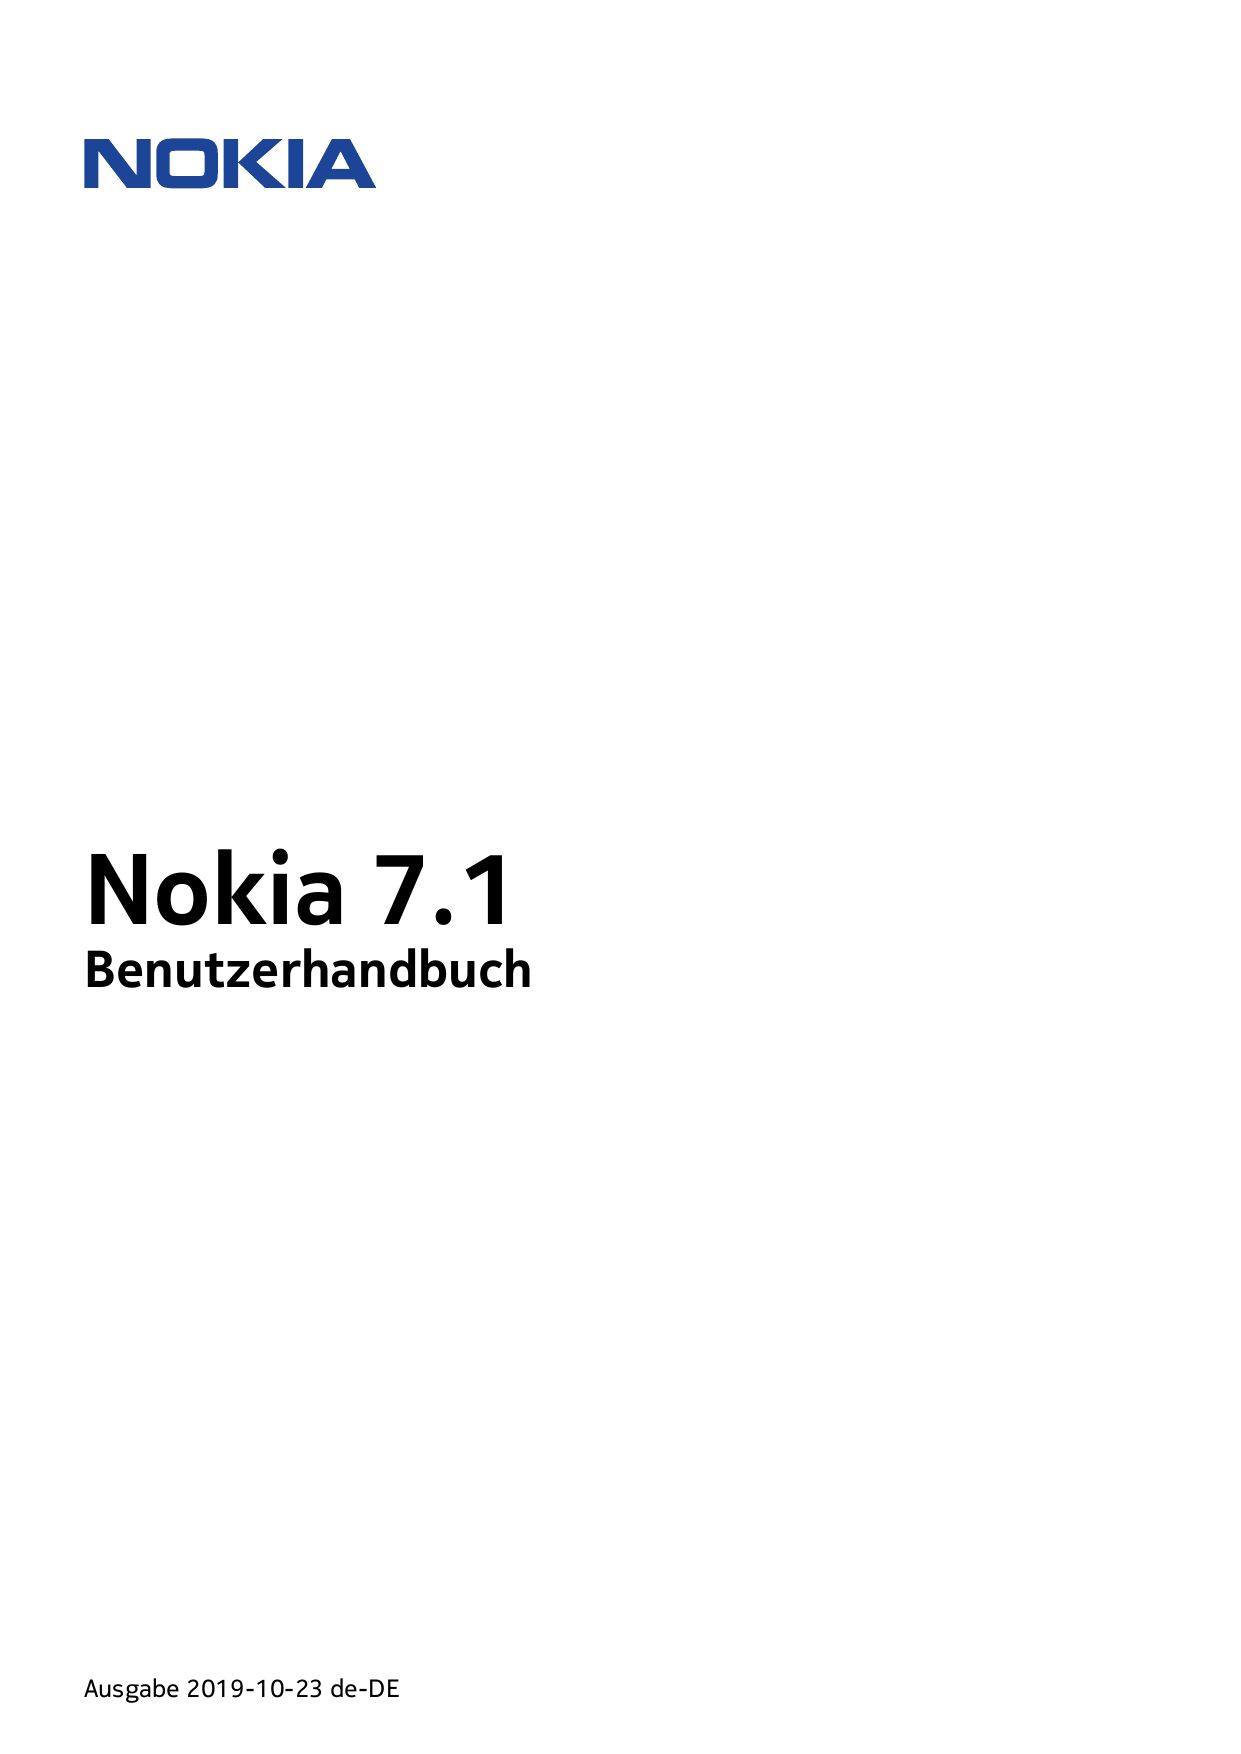 Nokia 7.1BenutzerhandbuchAusgabe 2019-10-23 de-DE